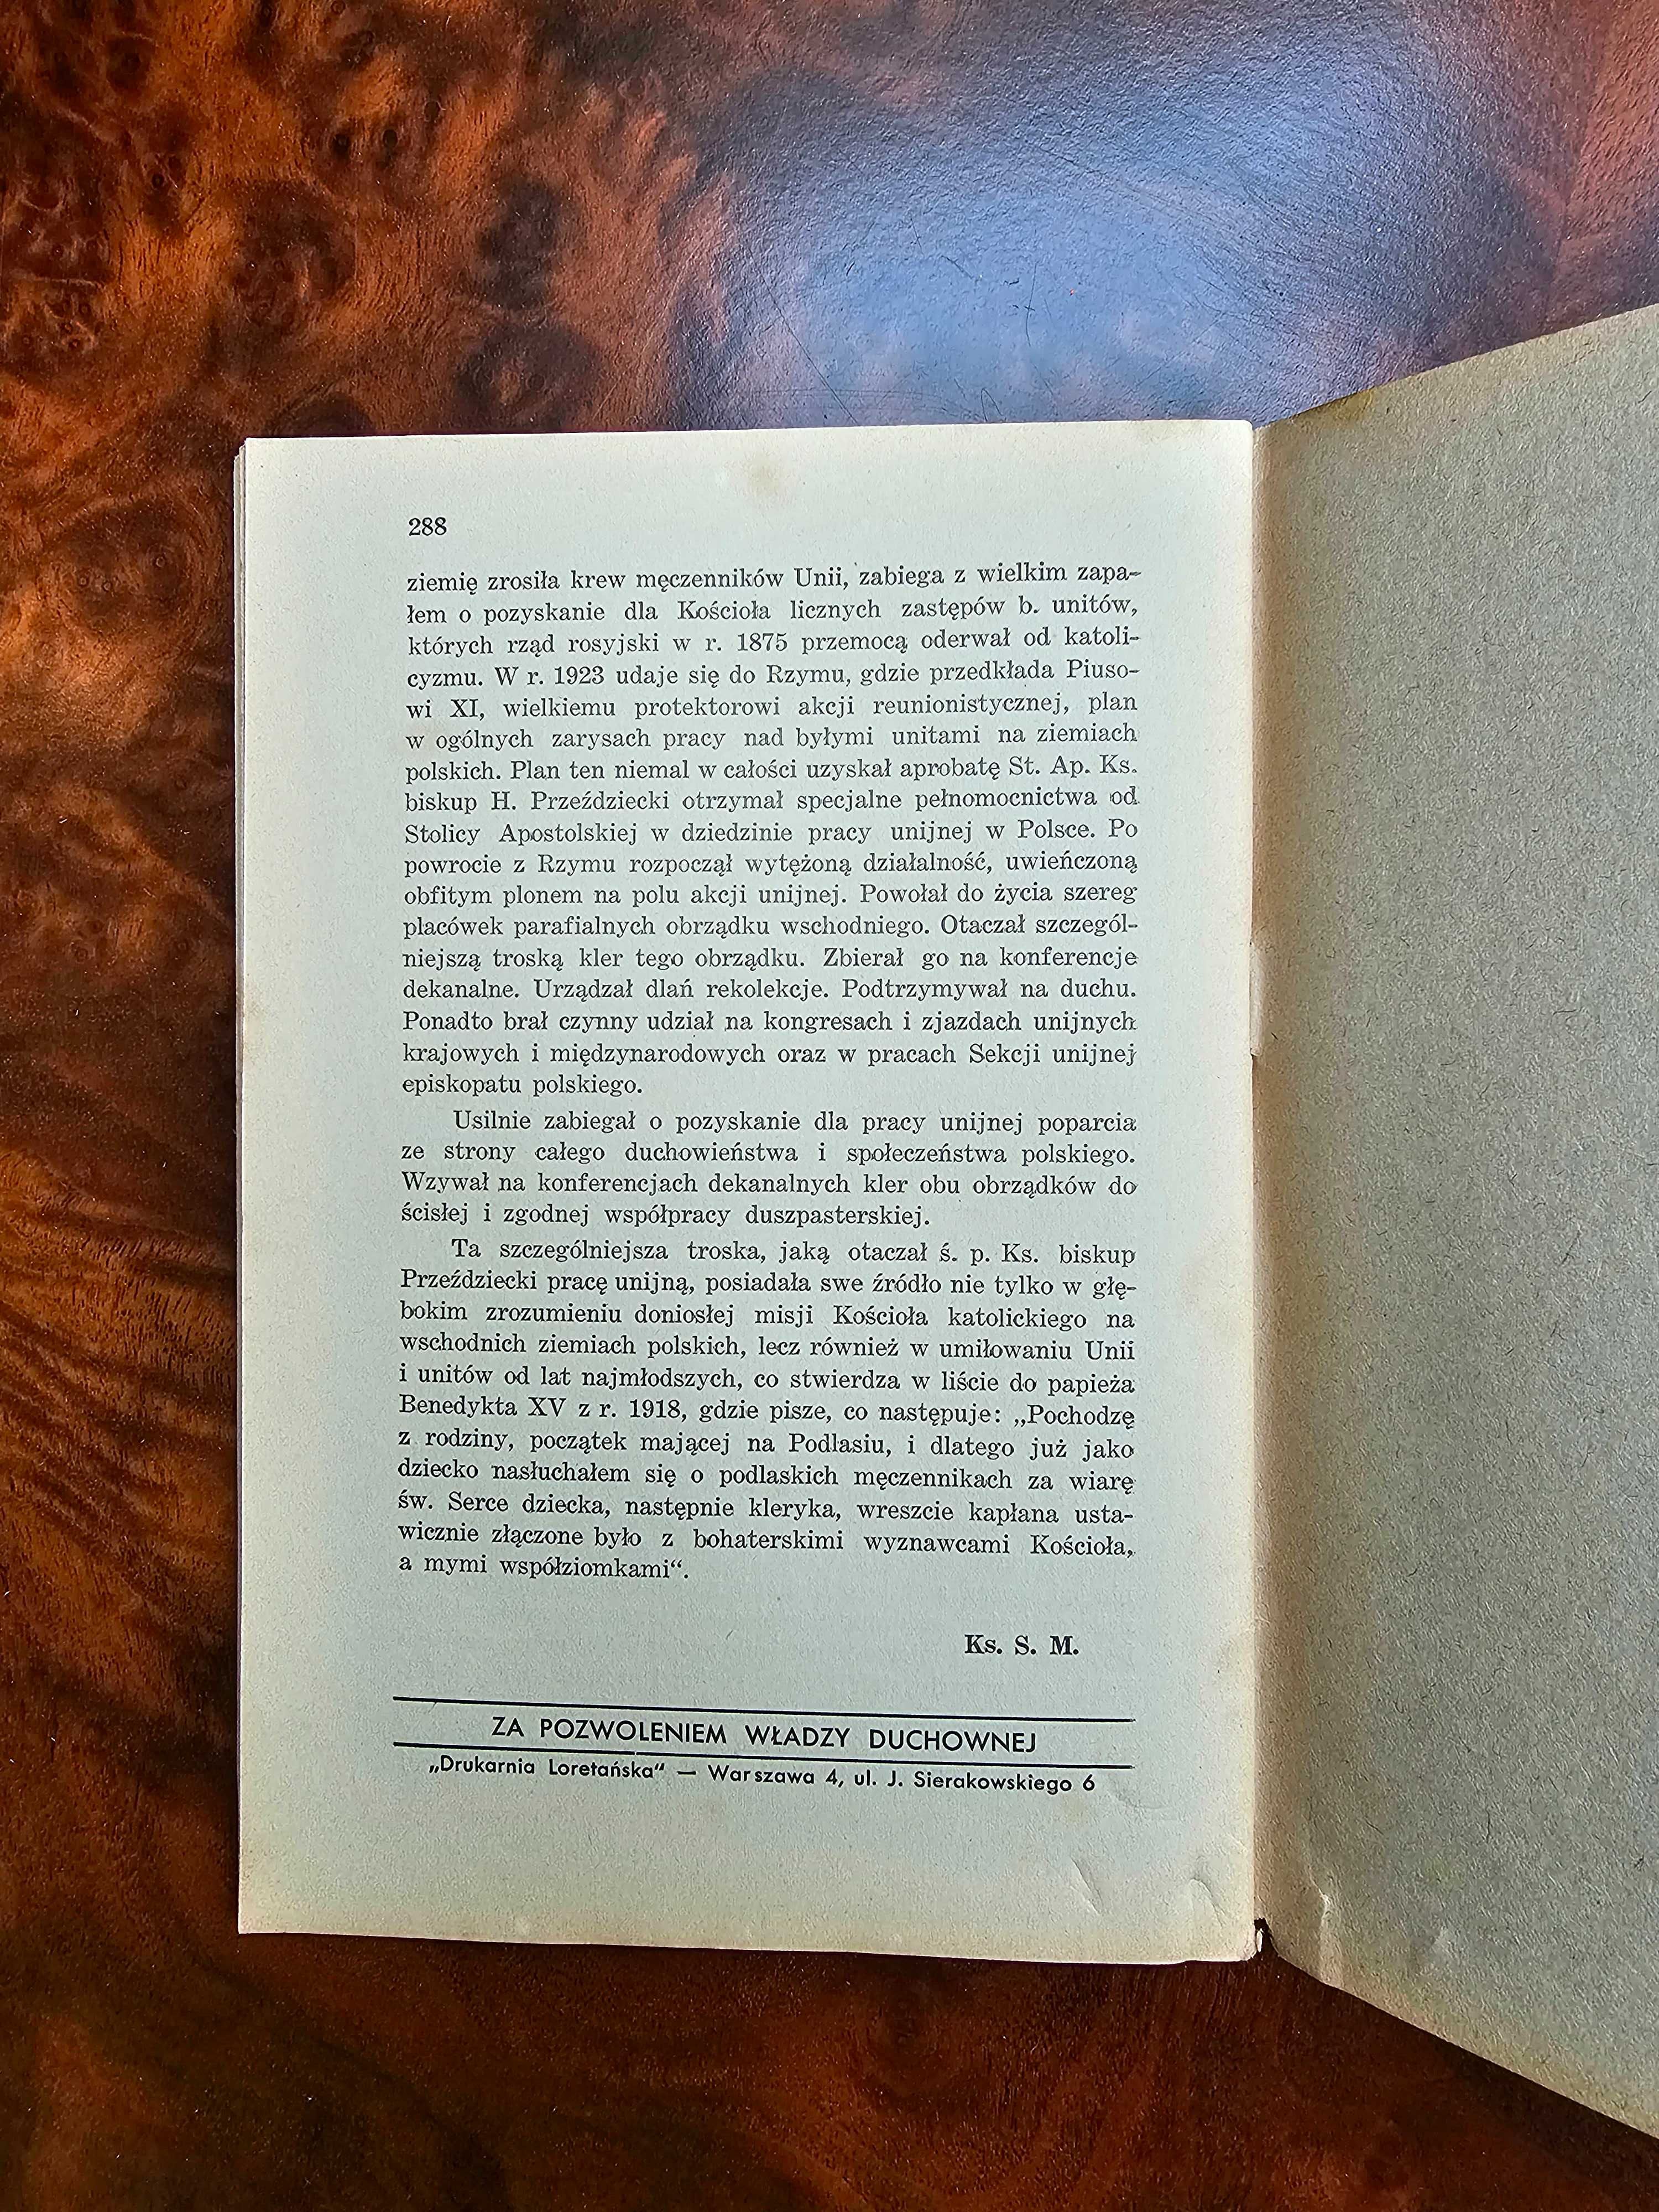 Miesięcznik Głos Kapłański, Rok XIII. Czerwiec 1939 Numer 6